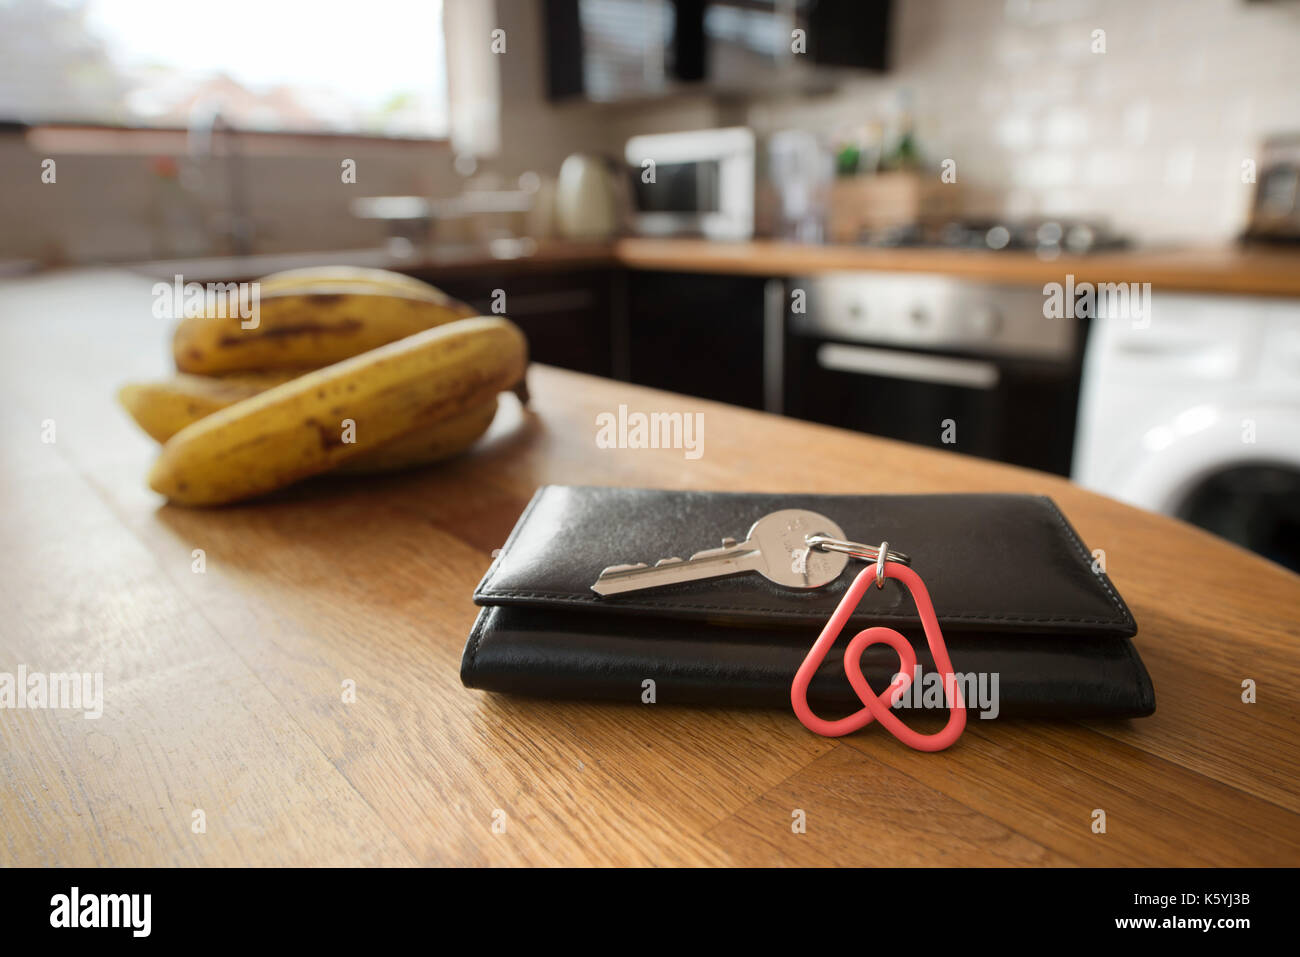 Un portachiavi Airbnb appoggia contro un portafogli nella cucina di un appartamento Airbnb disponibile a noleggio da parte degli ospiti. Foto Stock